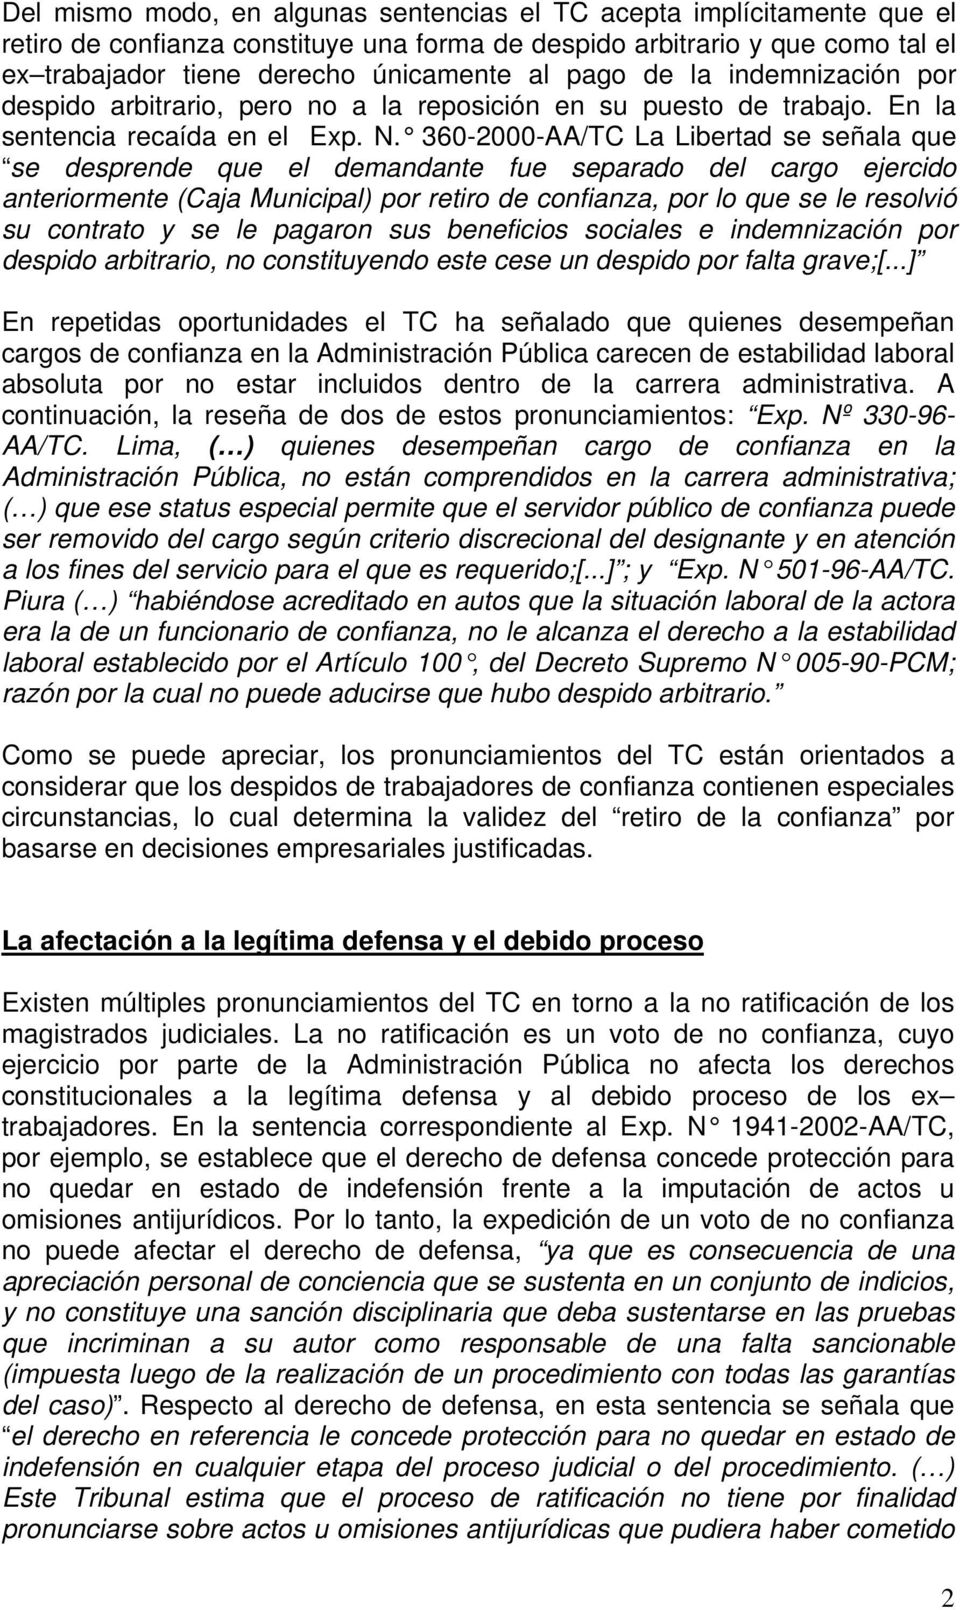 360-2000-AA/TC La Libertad se señala que se desprende que el demandante fue separado del cargo ejercido anteriormente (Caja Municipal) por retiro de confianza, por lo que se le resolvió su contrato y